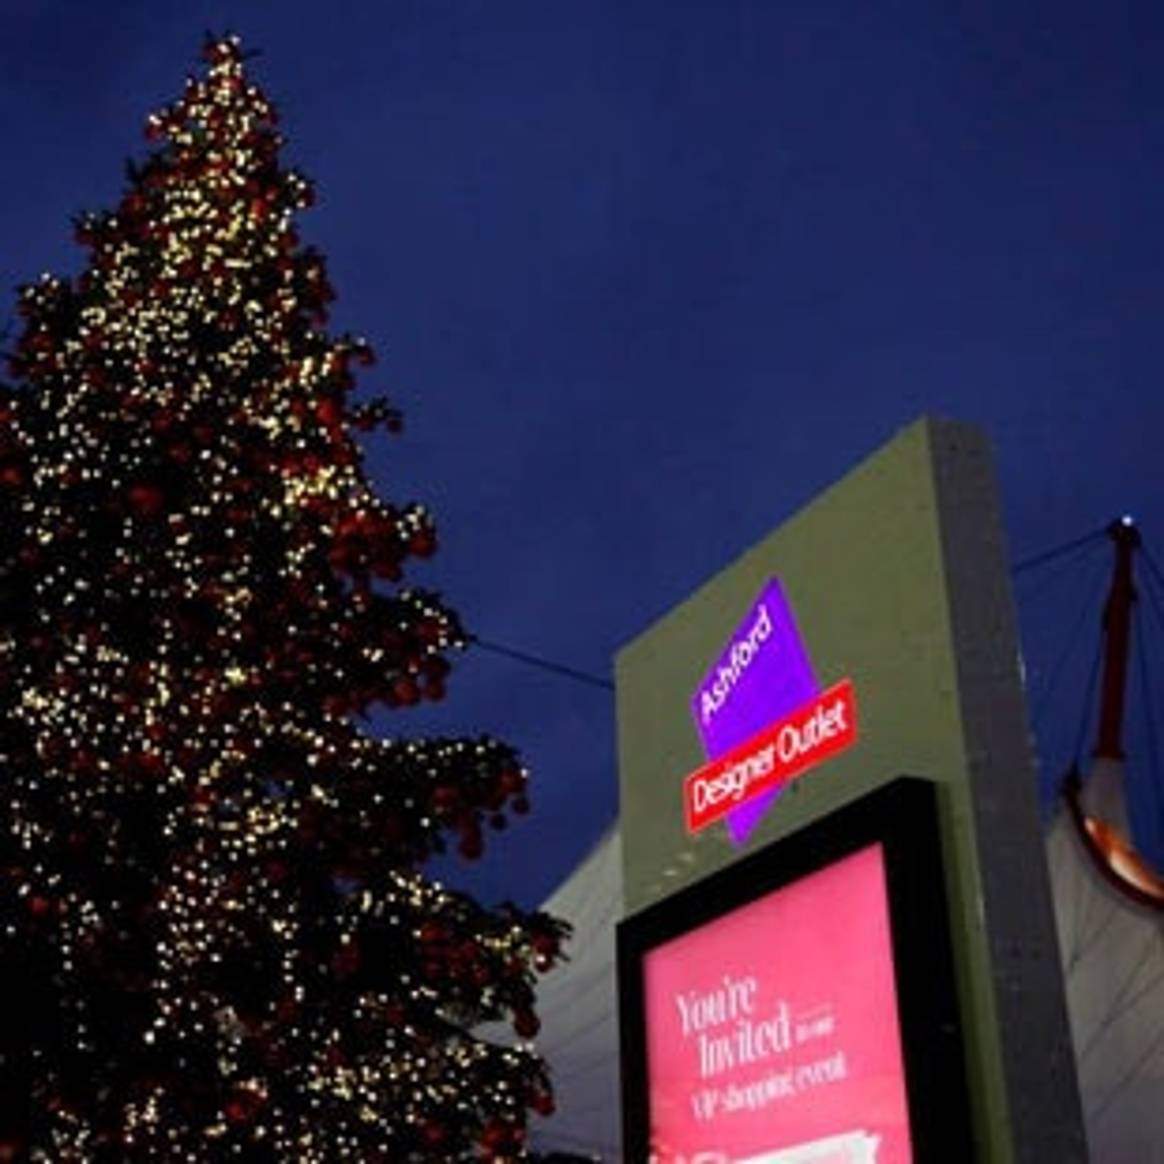 Las ventas de McArthurGlen aumentaron un 8% durante la Navidad